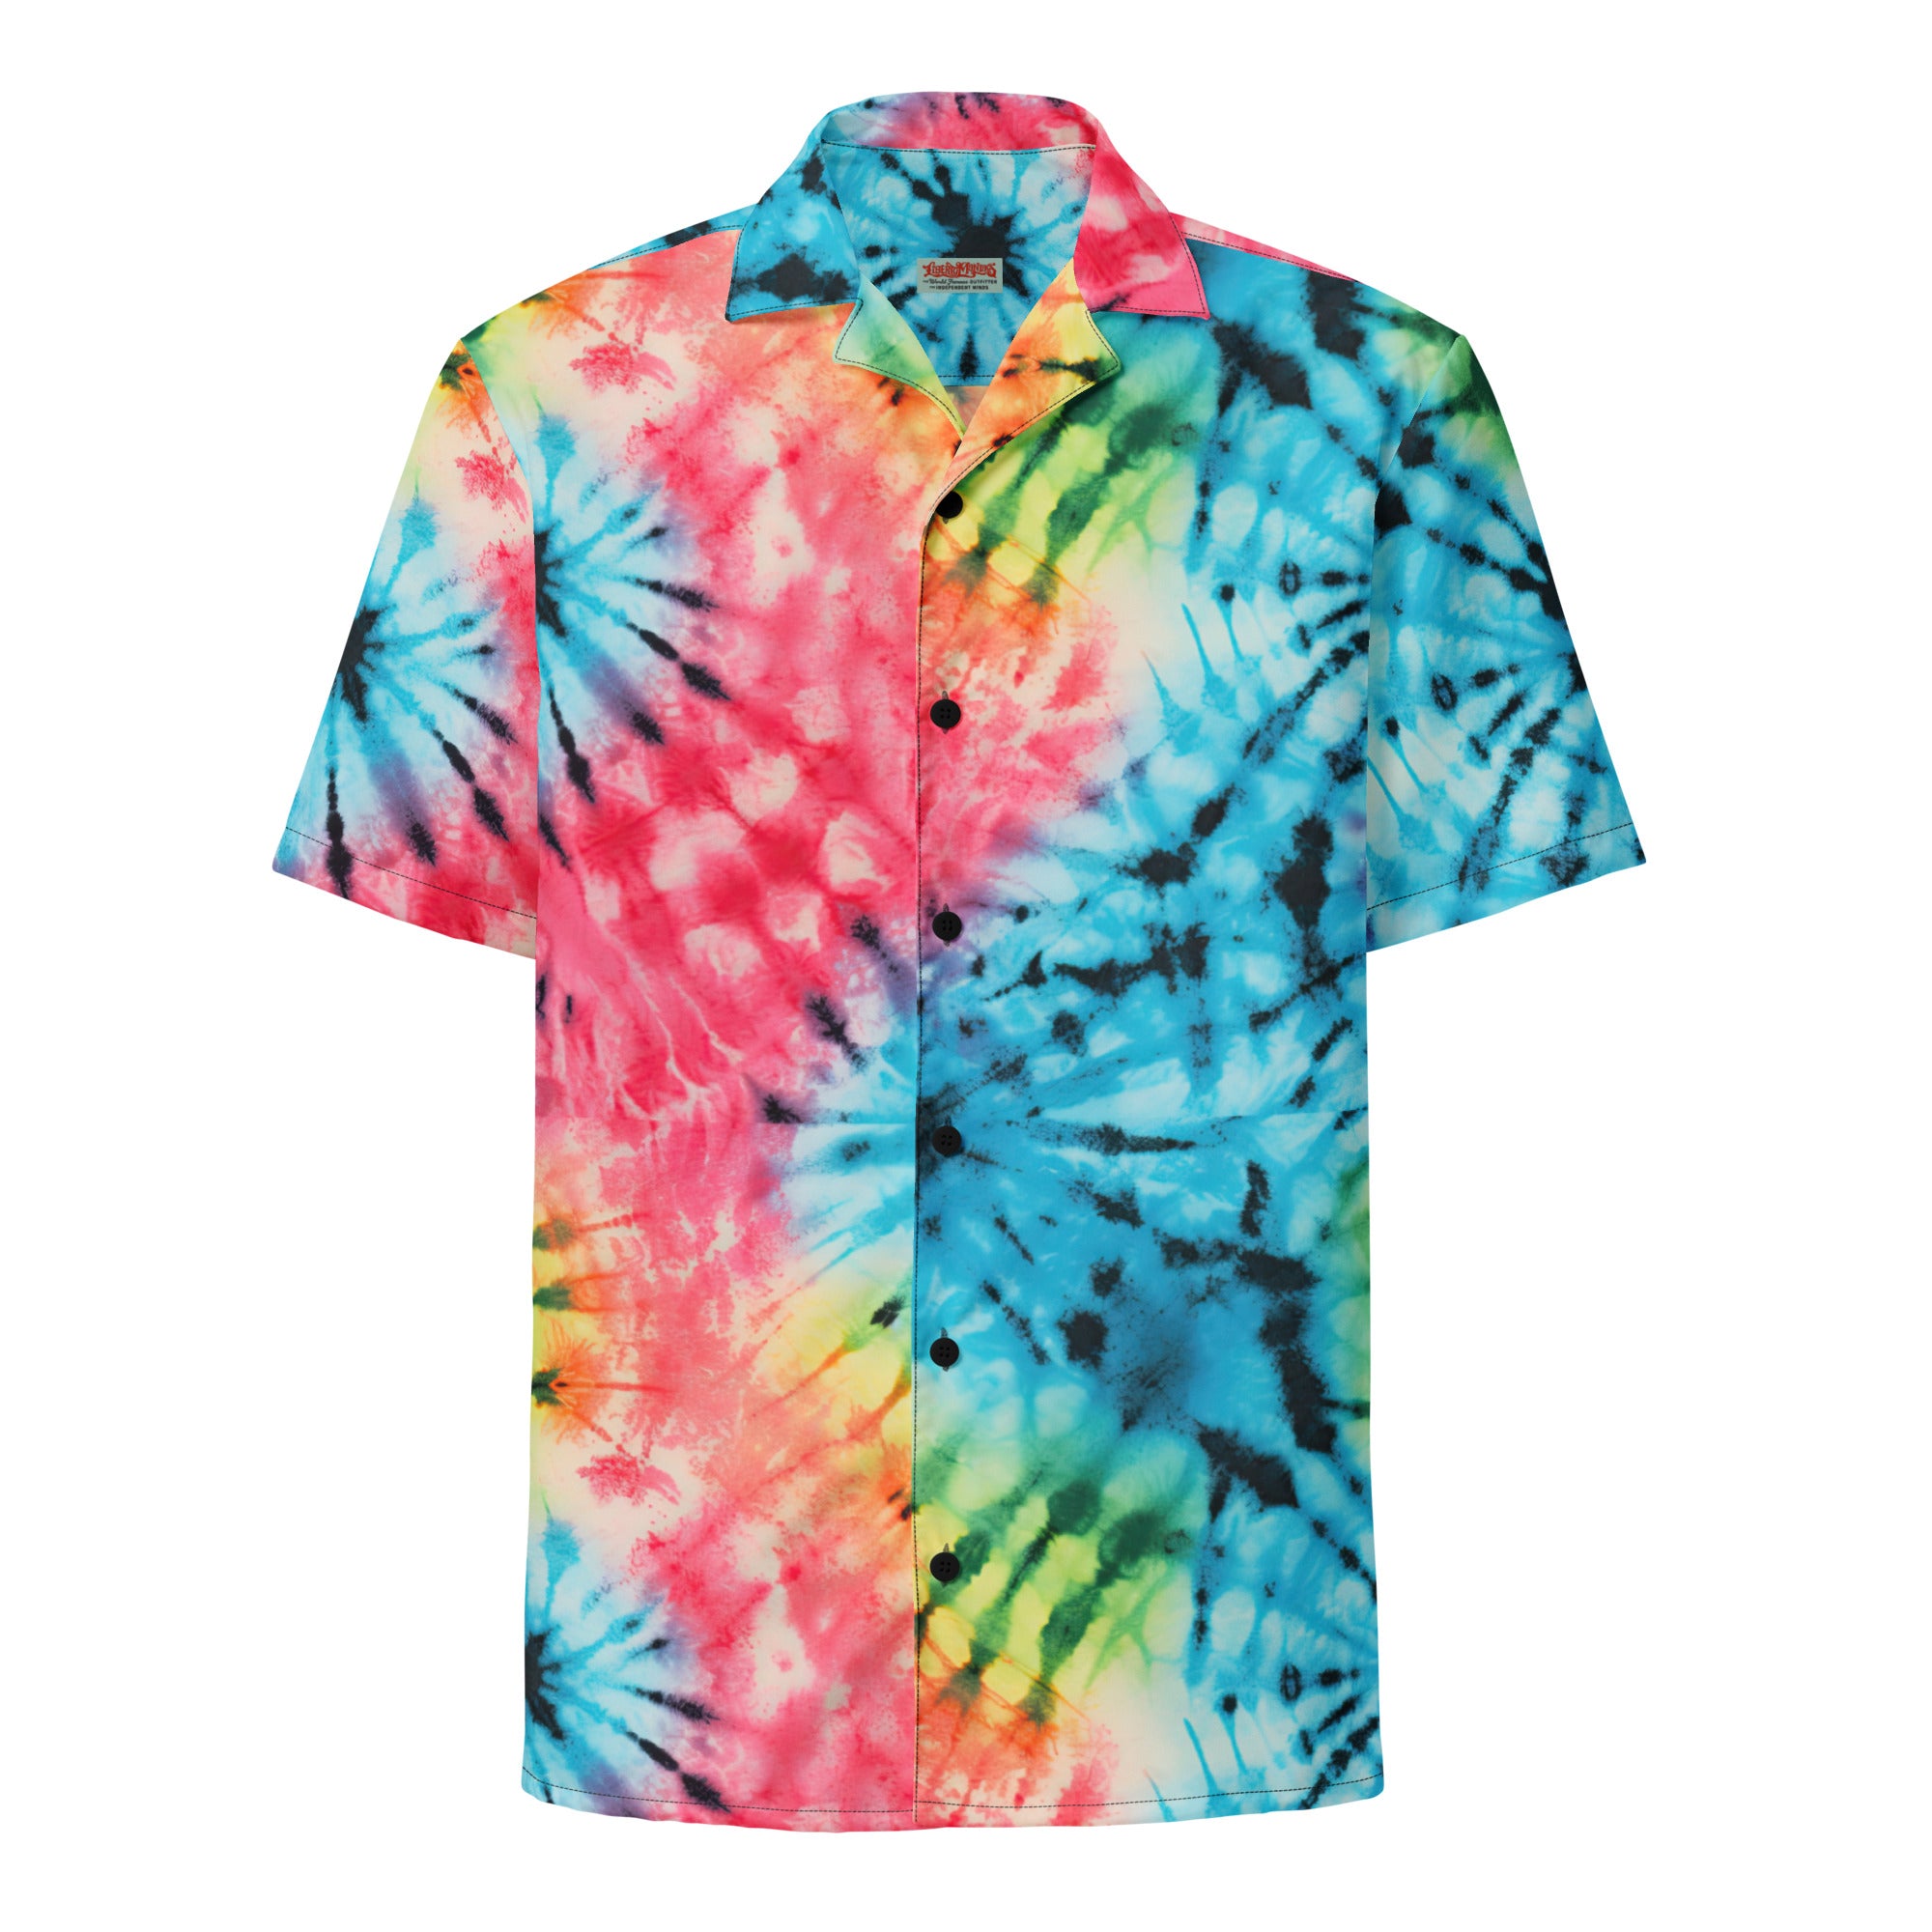 Laurel Canyon Dreamin' Tie Dye Hawaiian Button-Up Shirt